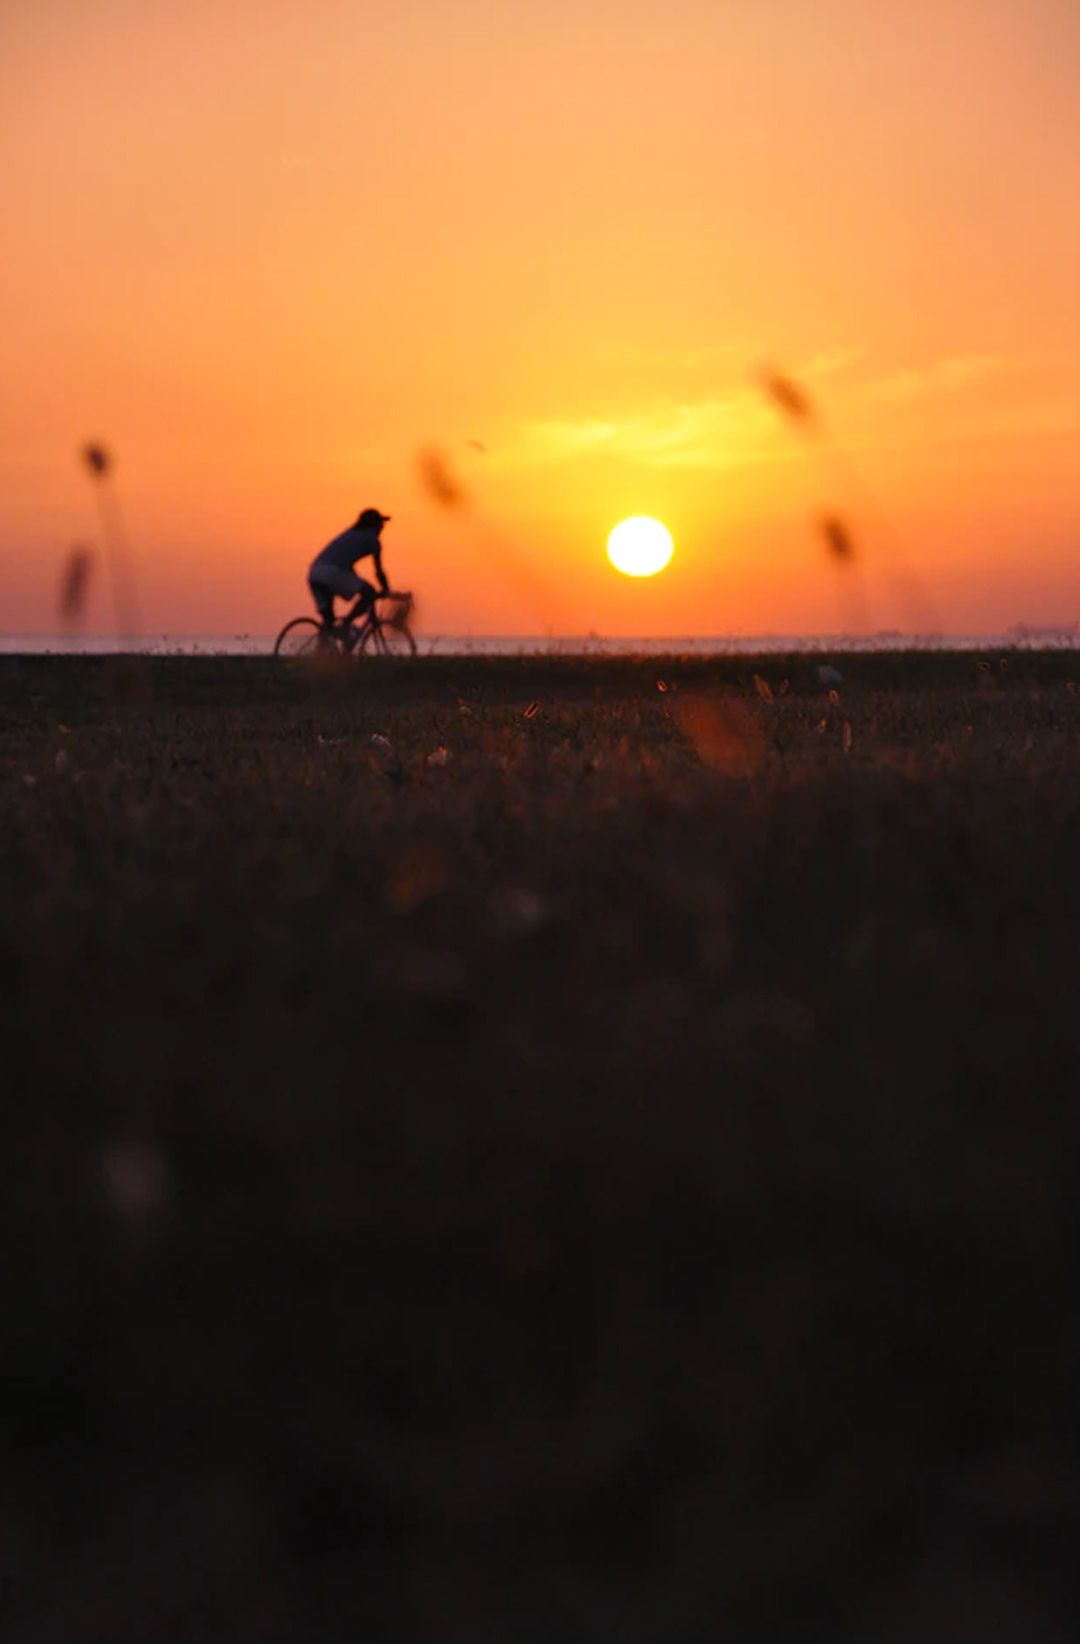 sillohette of man riding bike at sunrise